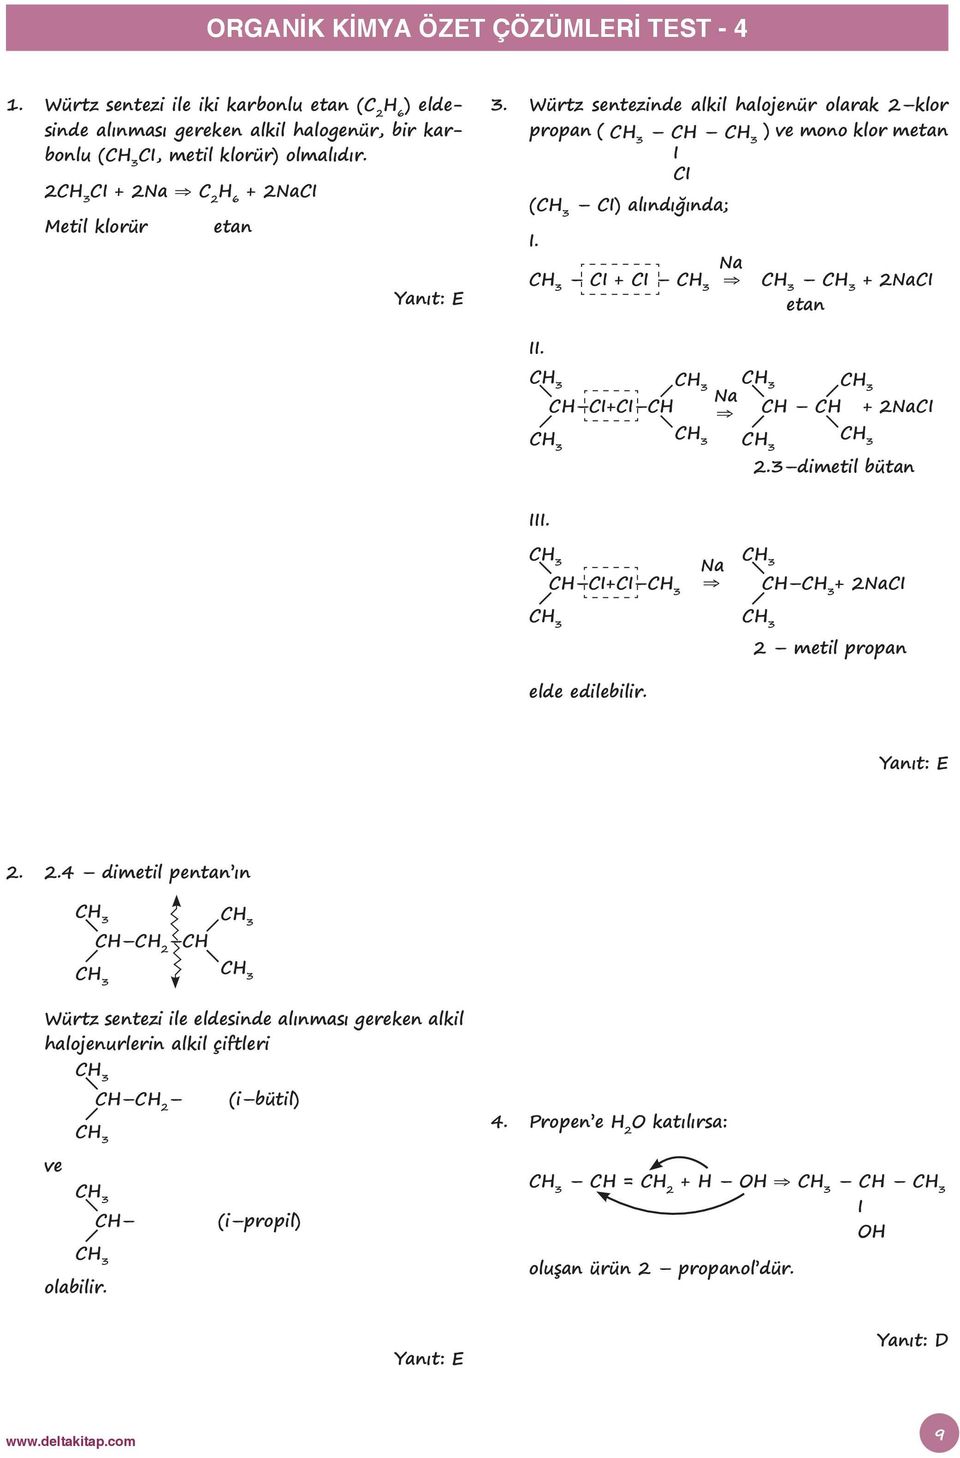 2 C + 2Na C 2 6 + 2NaC Metil klorür etan 3. Würtz sentezinde alkil halojenür olarak 2 klor propan ( C ) ve mono klor metan C ( C) alındığında;. Na C + C + 2NaC etan.